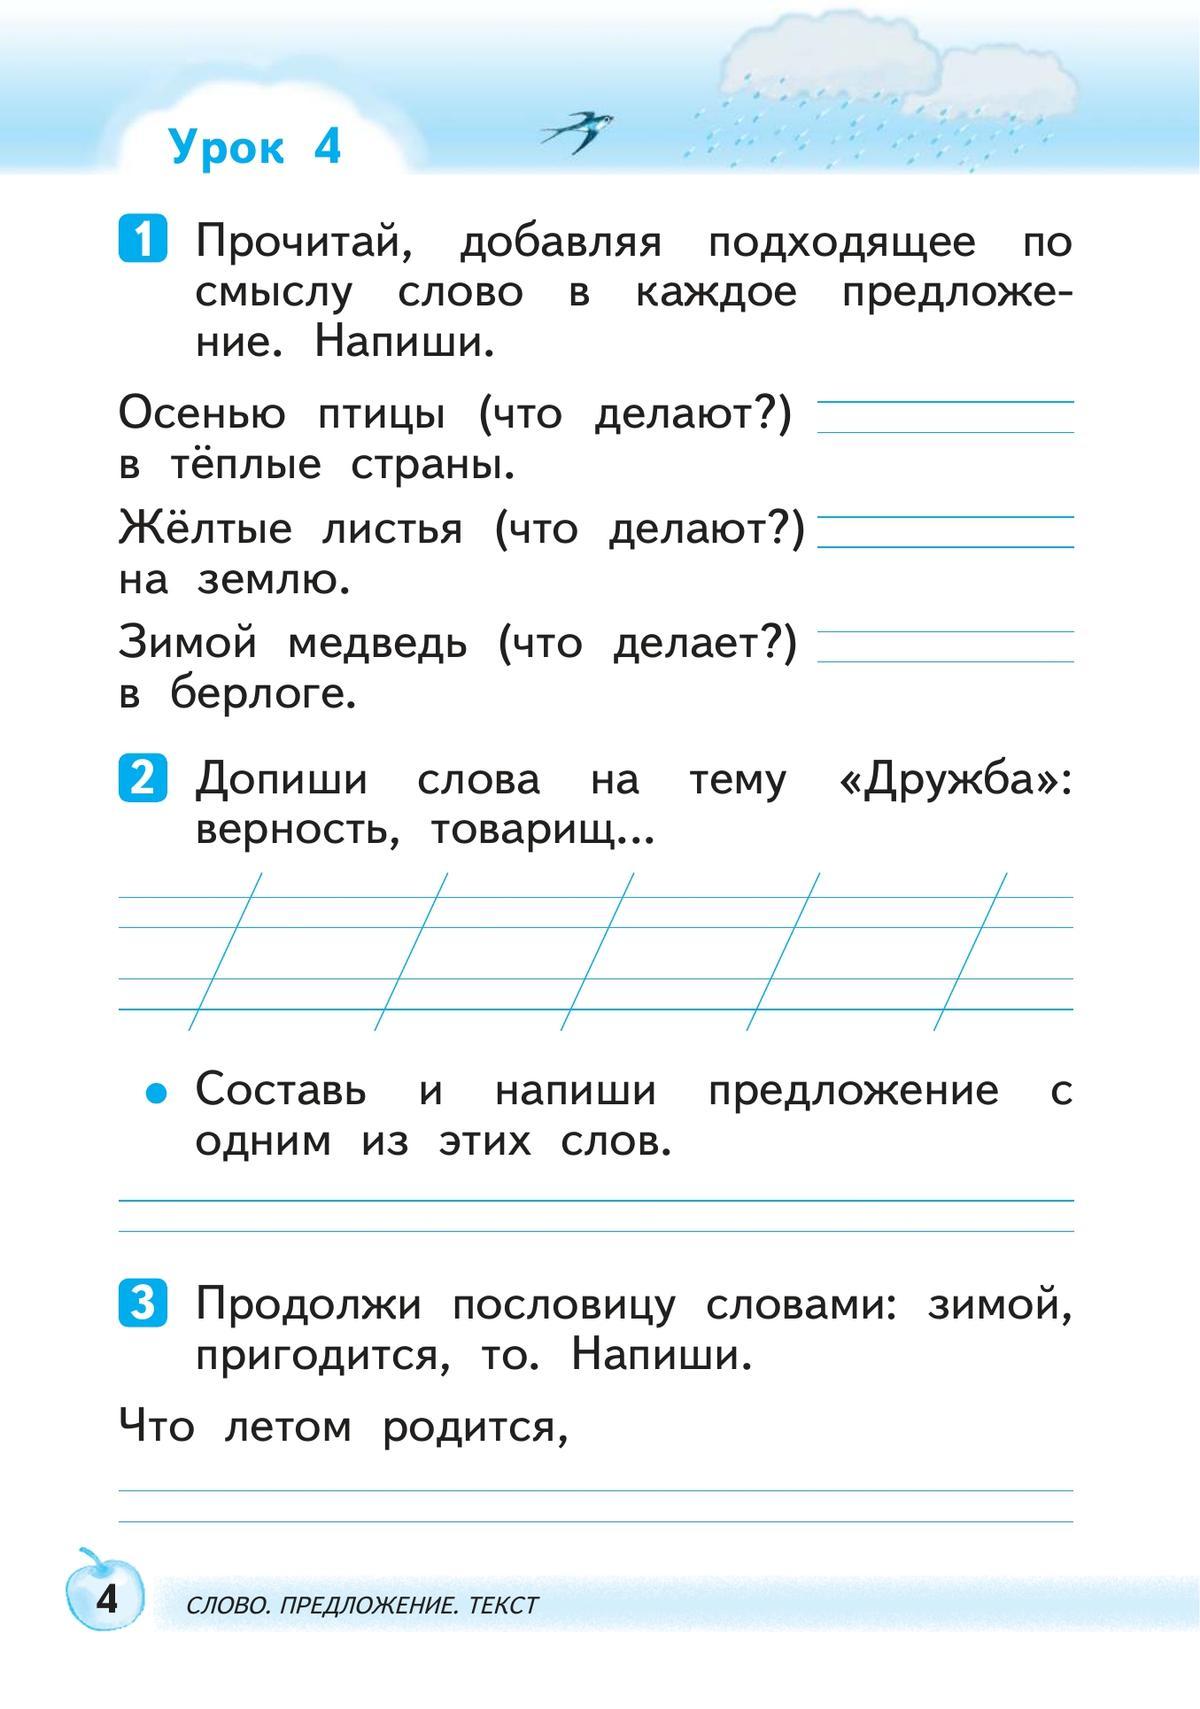 Русский язык. 1 класс. Развитие речи. Рабочая тетрадь 5